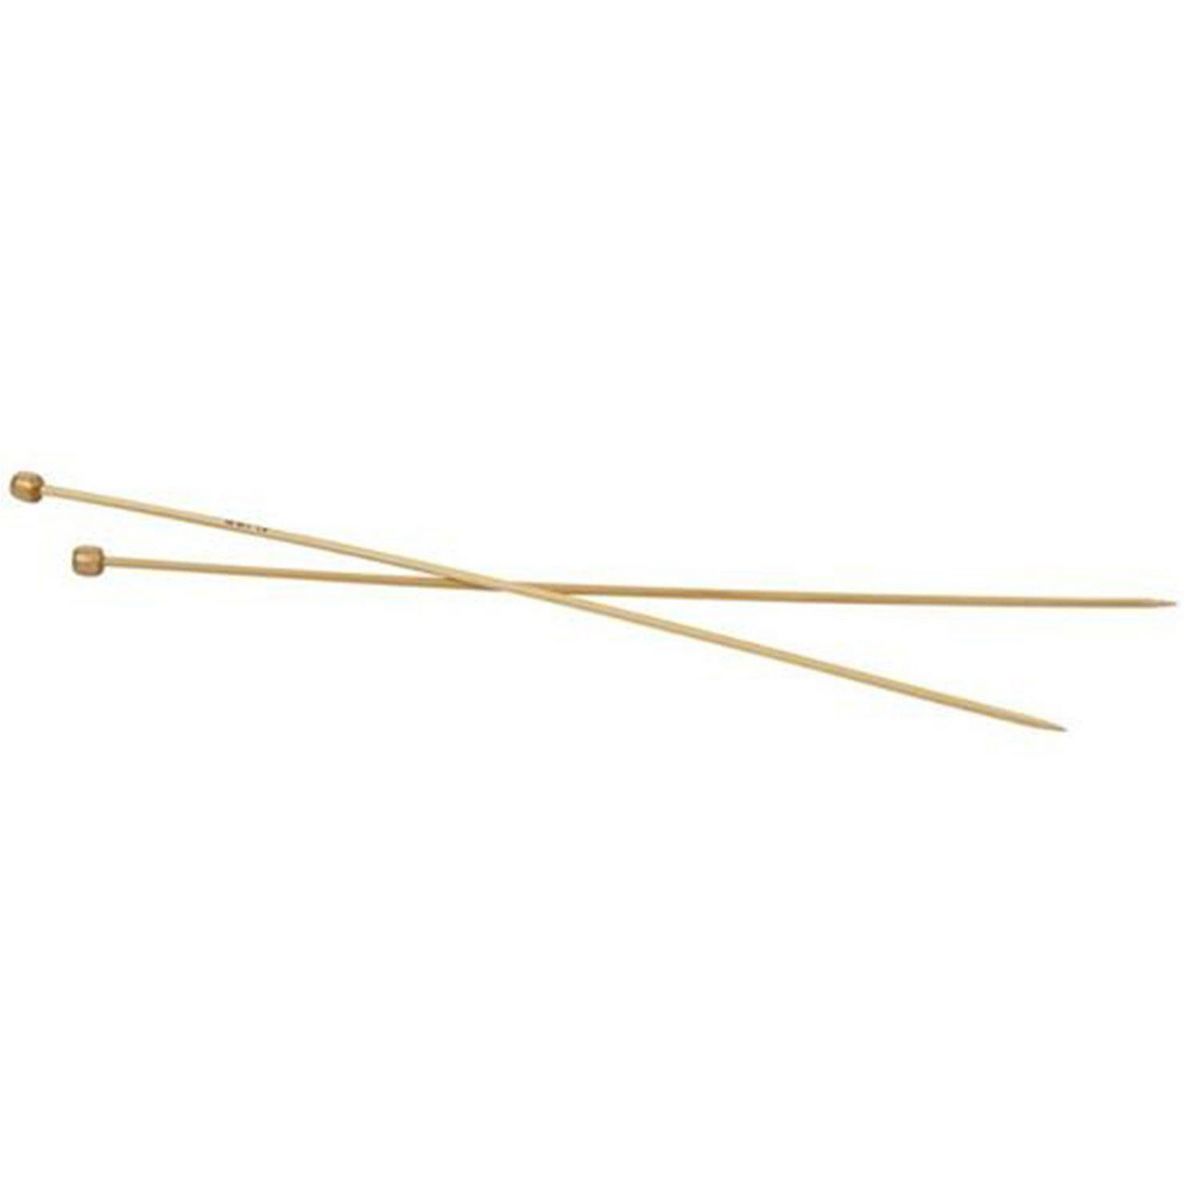  2 Aiguilles À Tricoter En Bambou 35 cm - Ø 3,5 mm